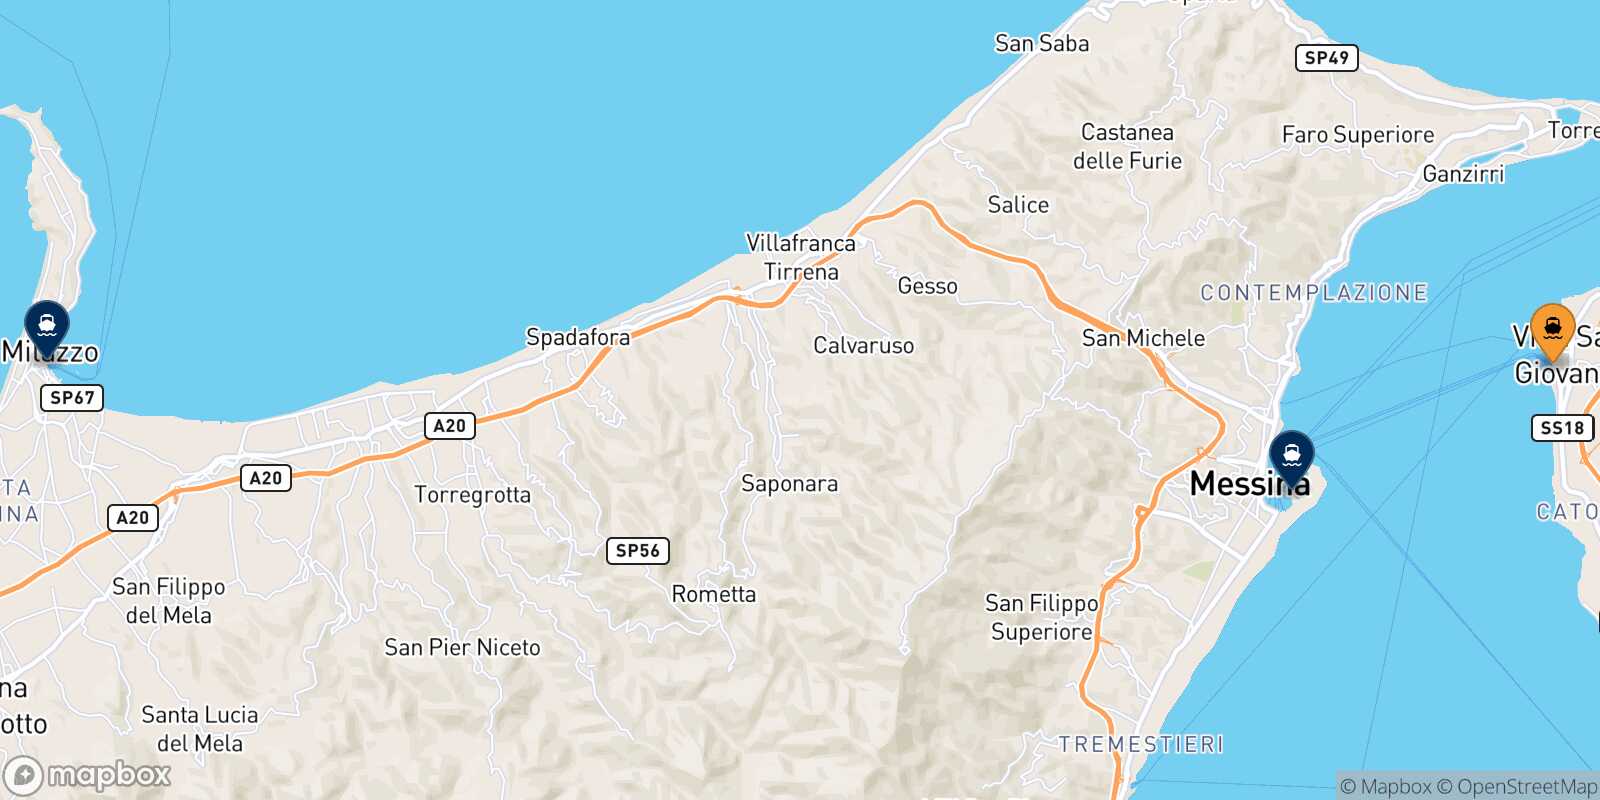 Mappa delle destinazioni raggiungibili da Reggio Calabria